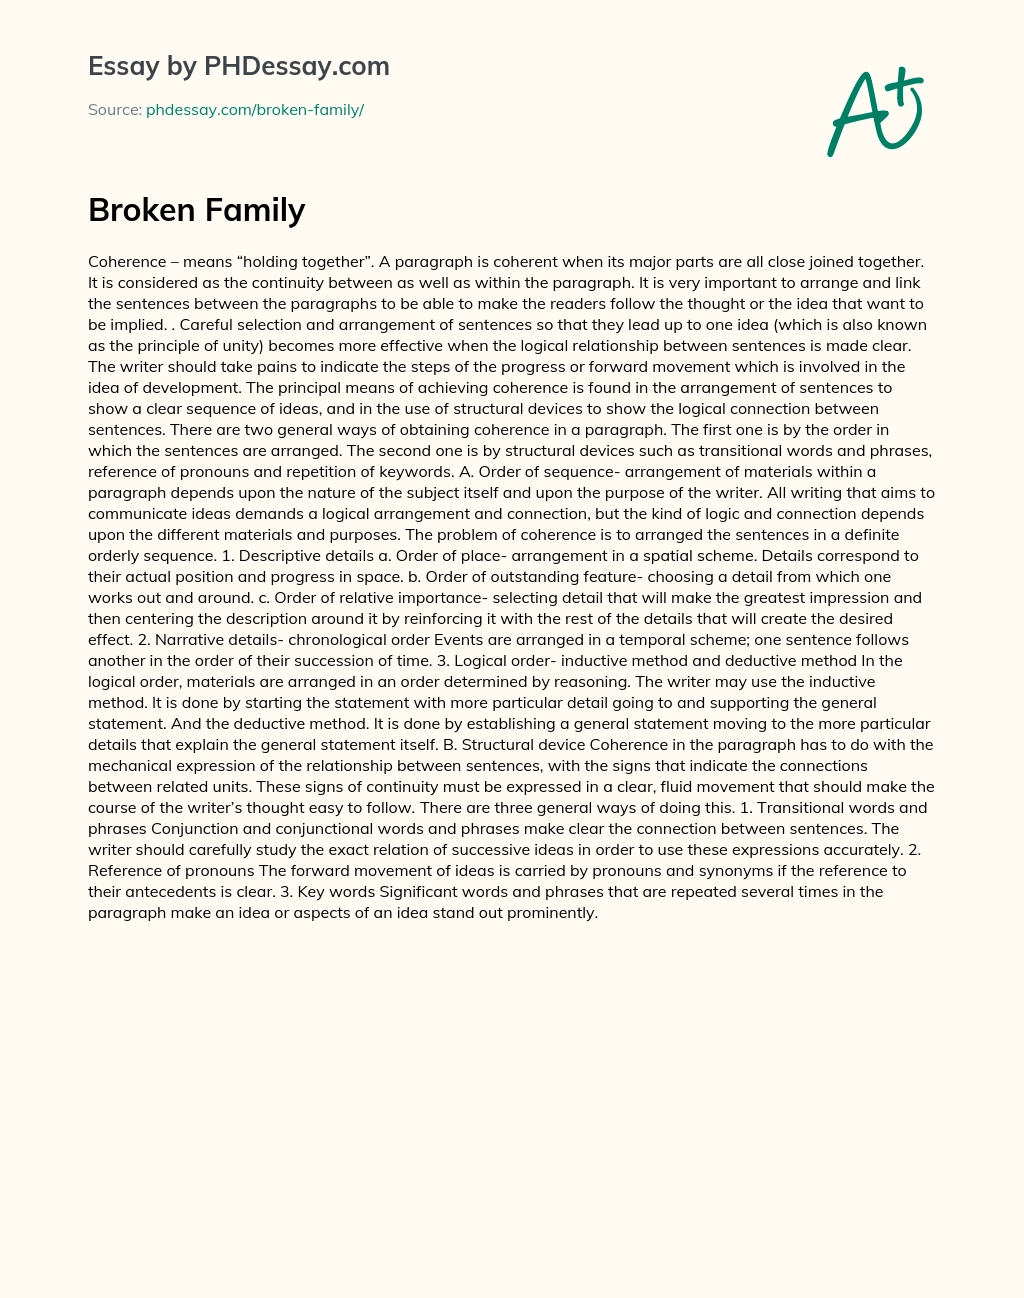 Broken Family essay